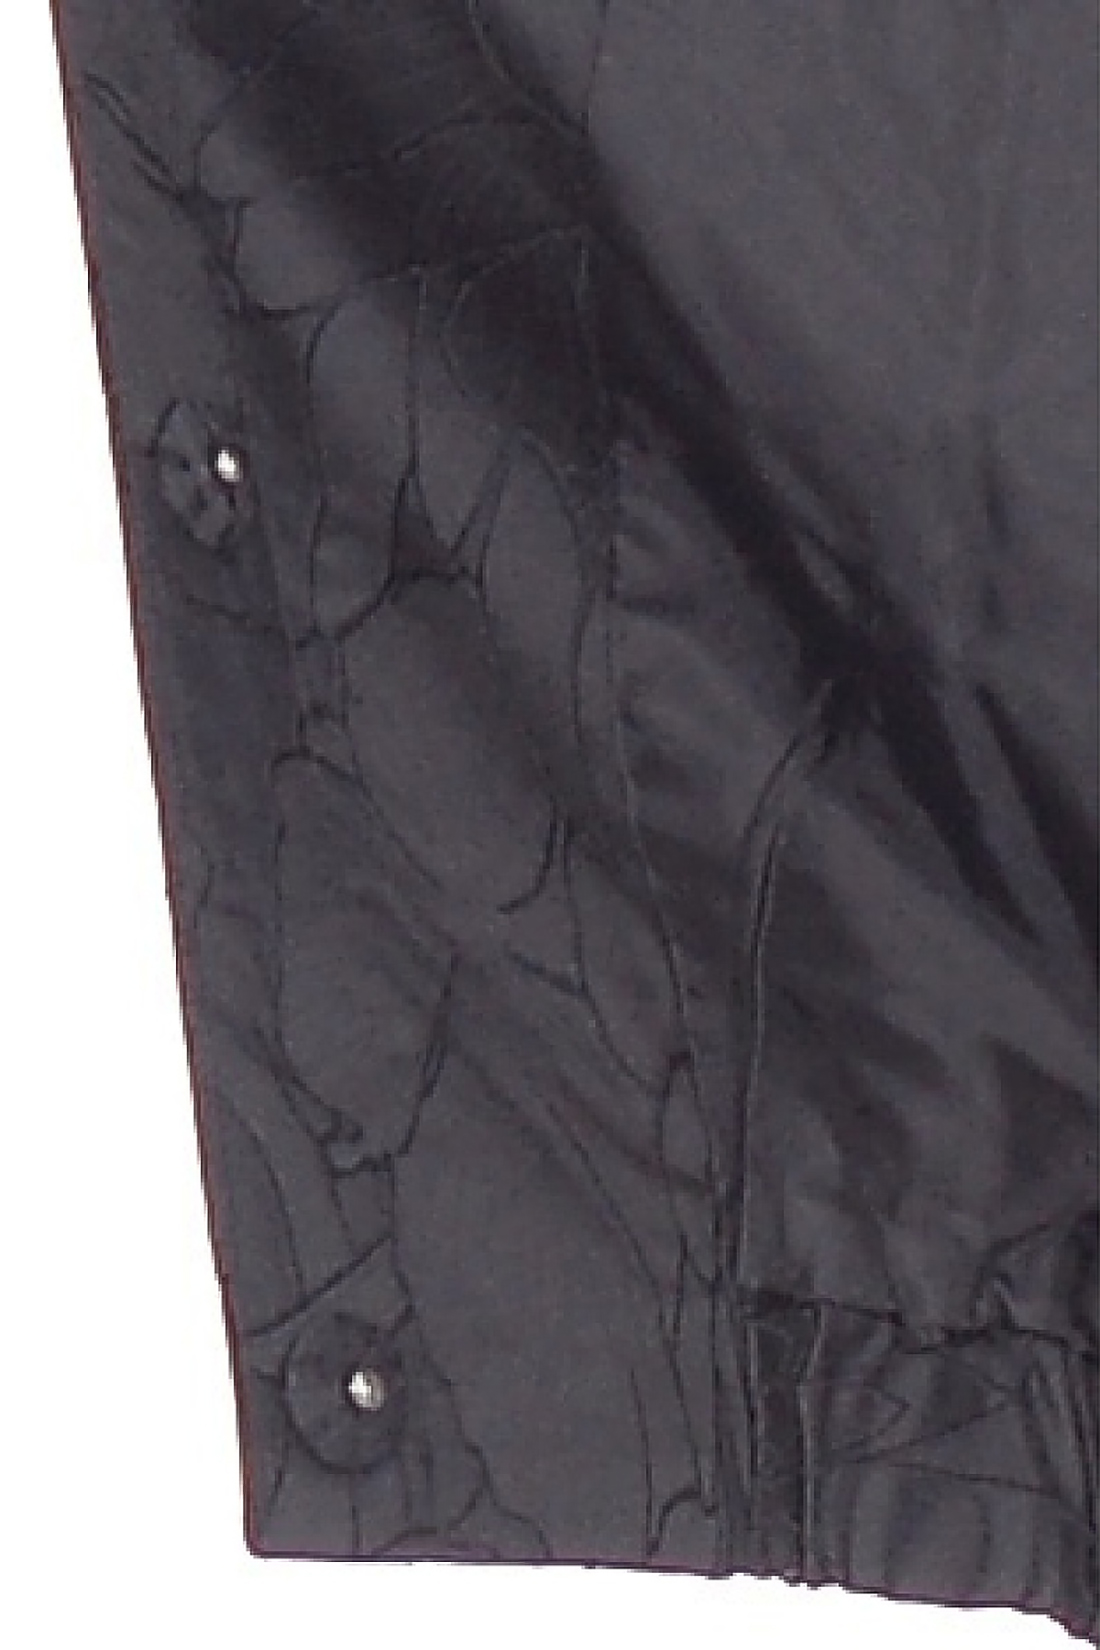 Ветровка-бомбер с жаккардом (арт. baon B108014), размер M, цвет черный Ветровка-бомбер с жаккардом (арт. baon B108014) - фото 3